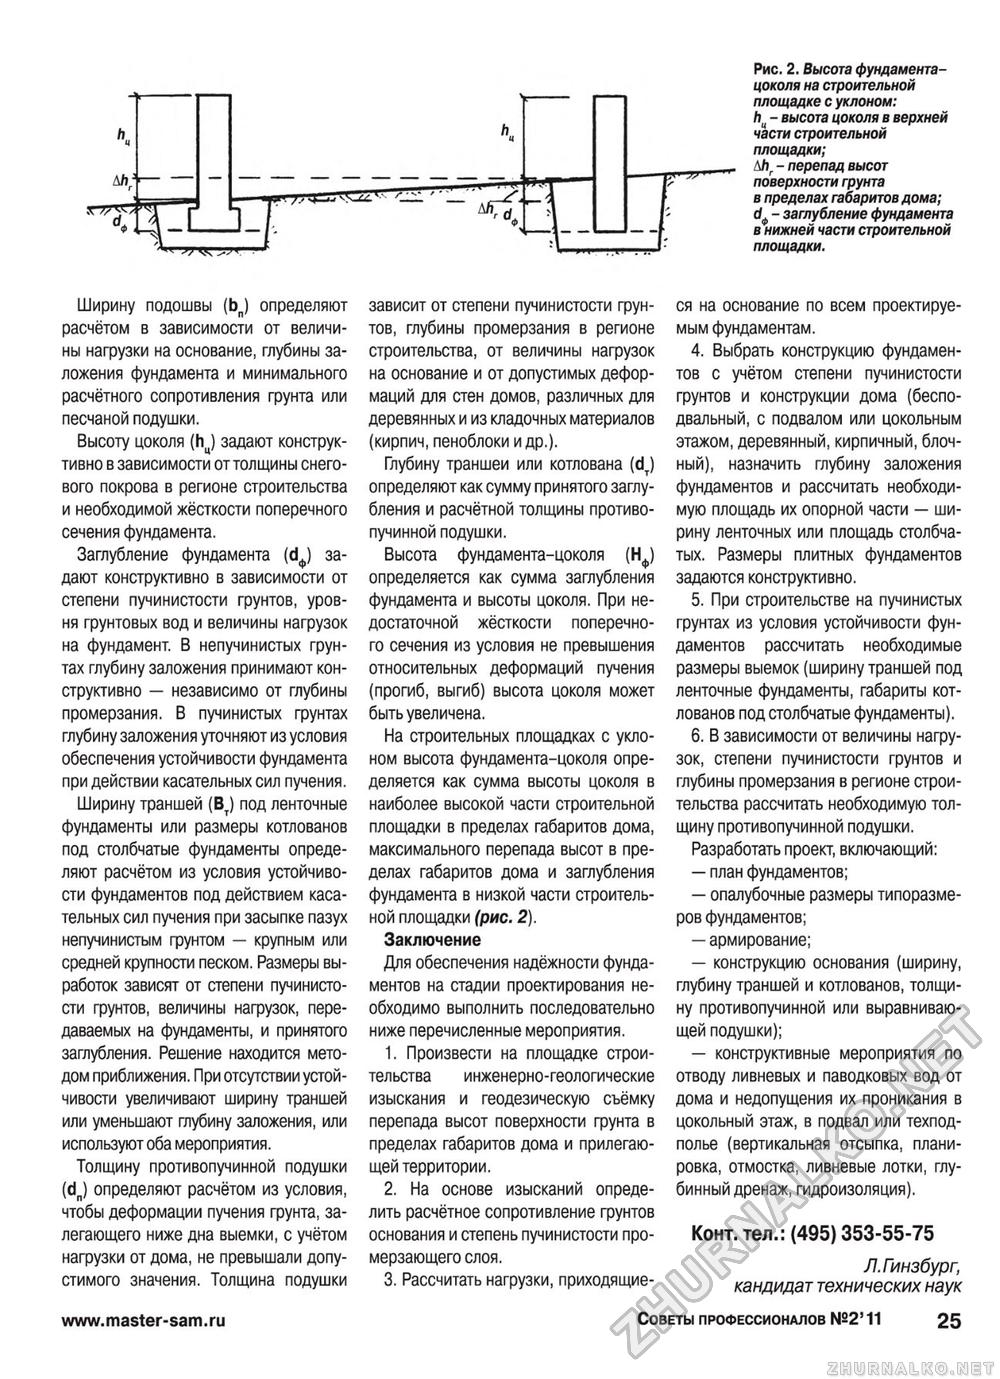 Советы профессионалов 2011-02, страница 25